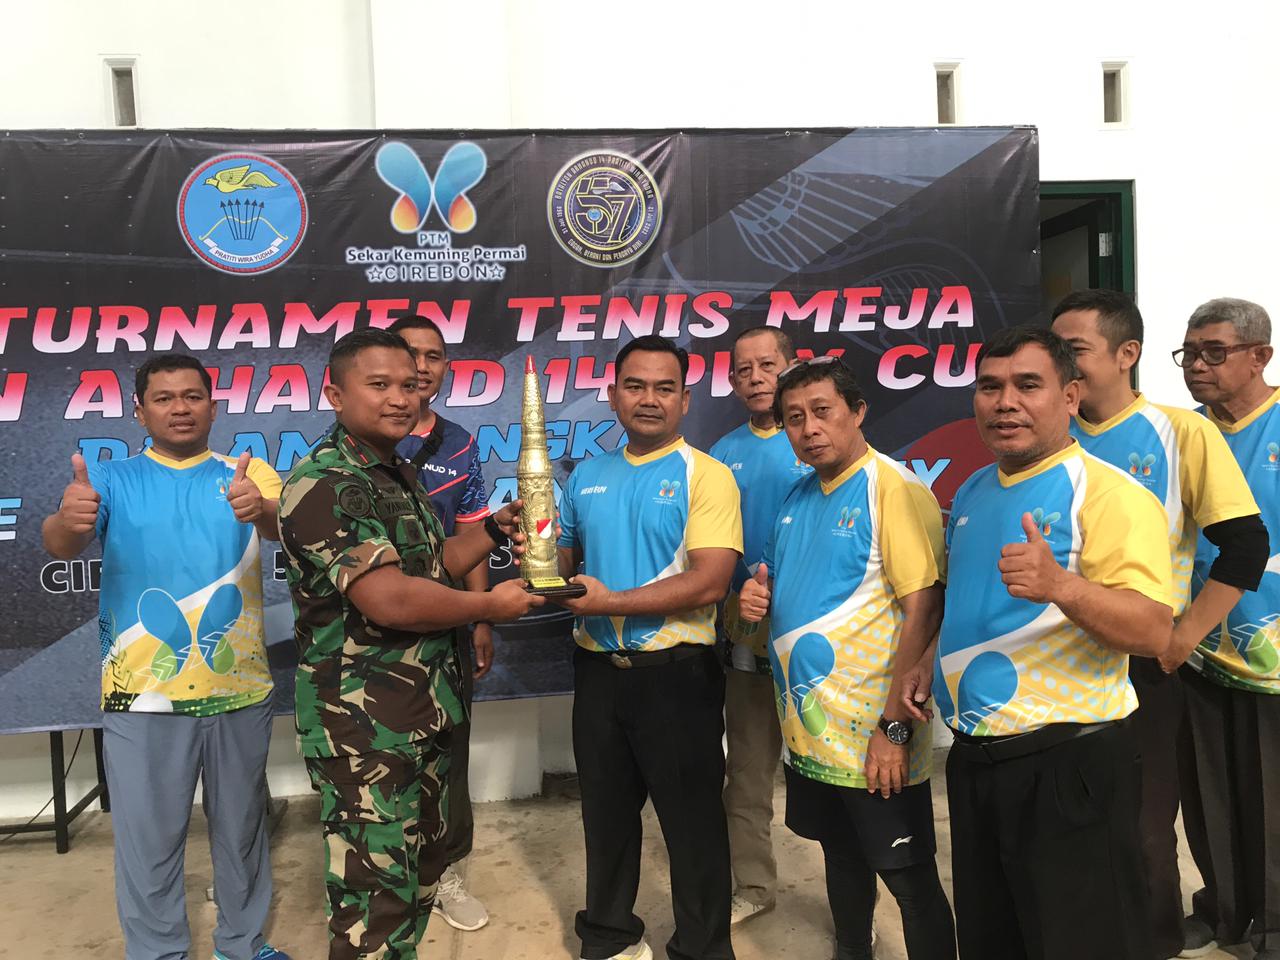 Arhanud dan PTM SKP Gelar Turnamen Tenis Meja, Ada Peserta dari Jawa Timur